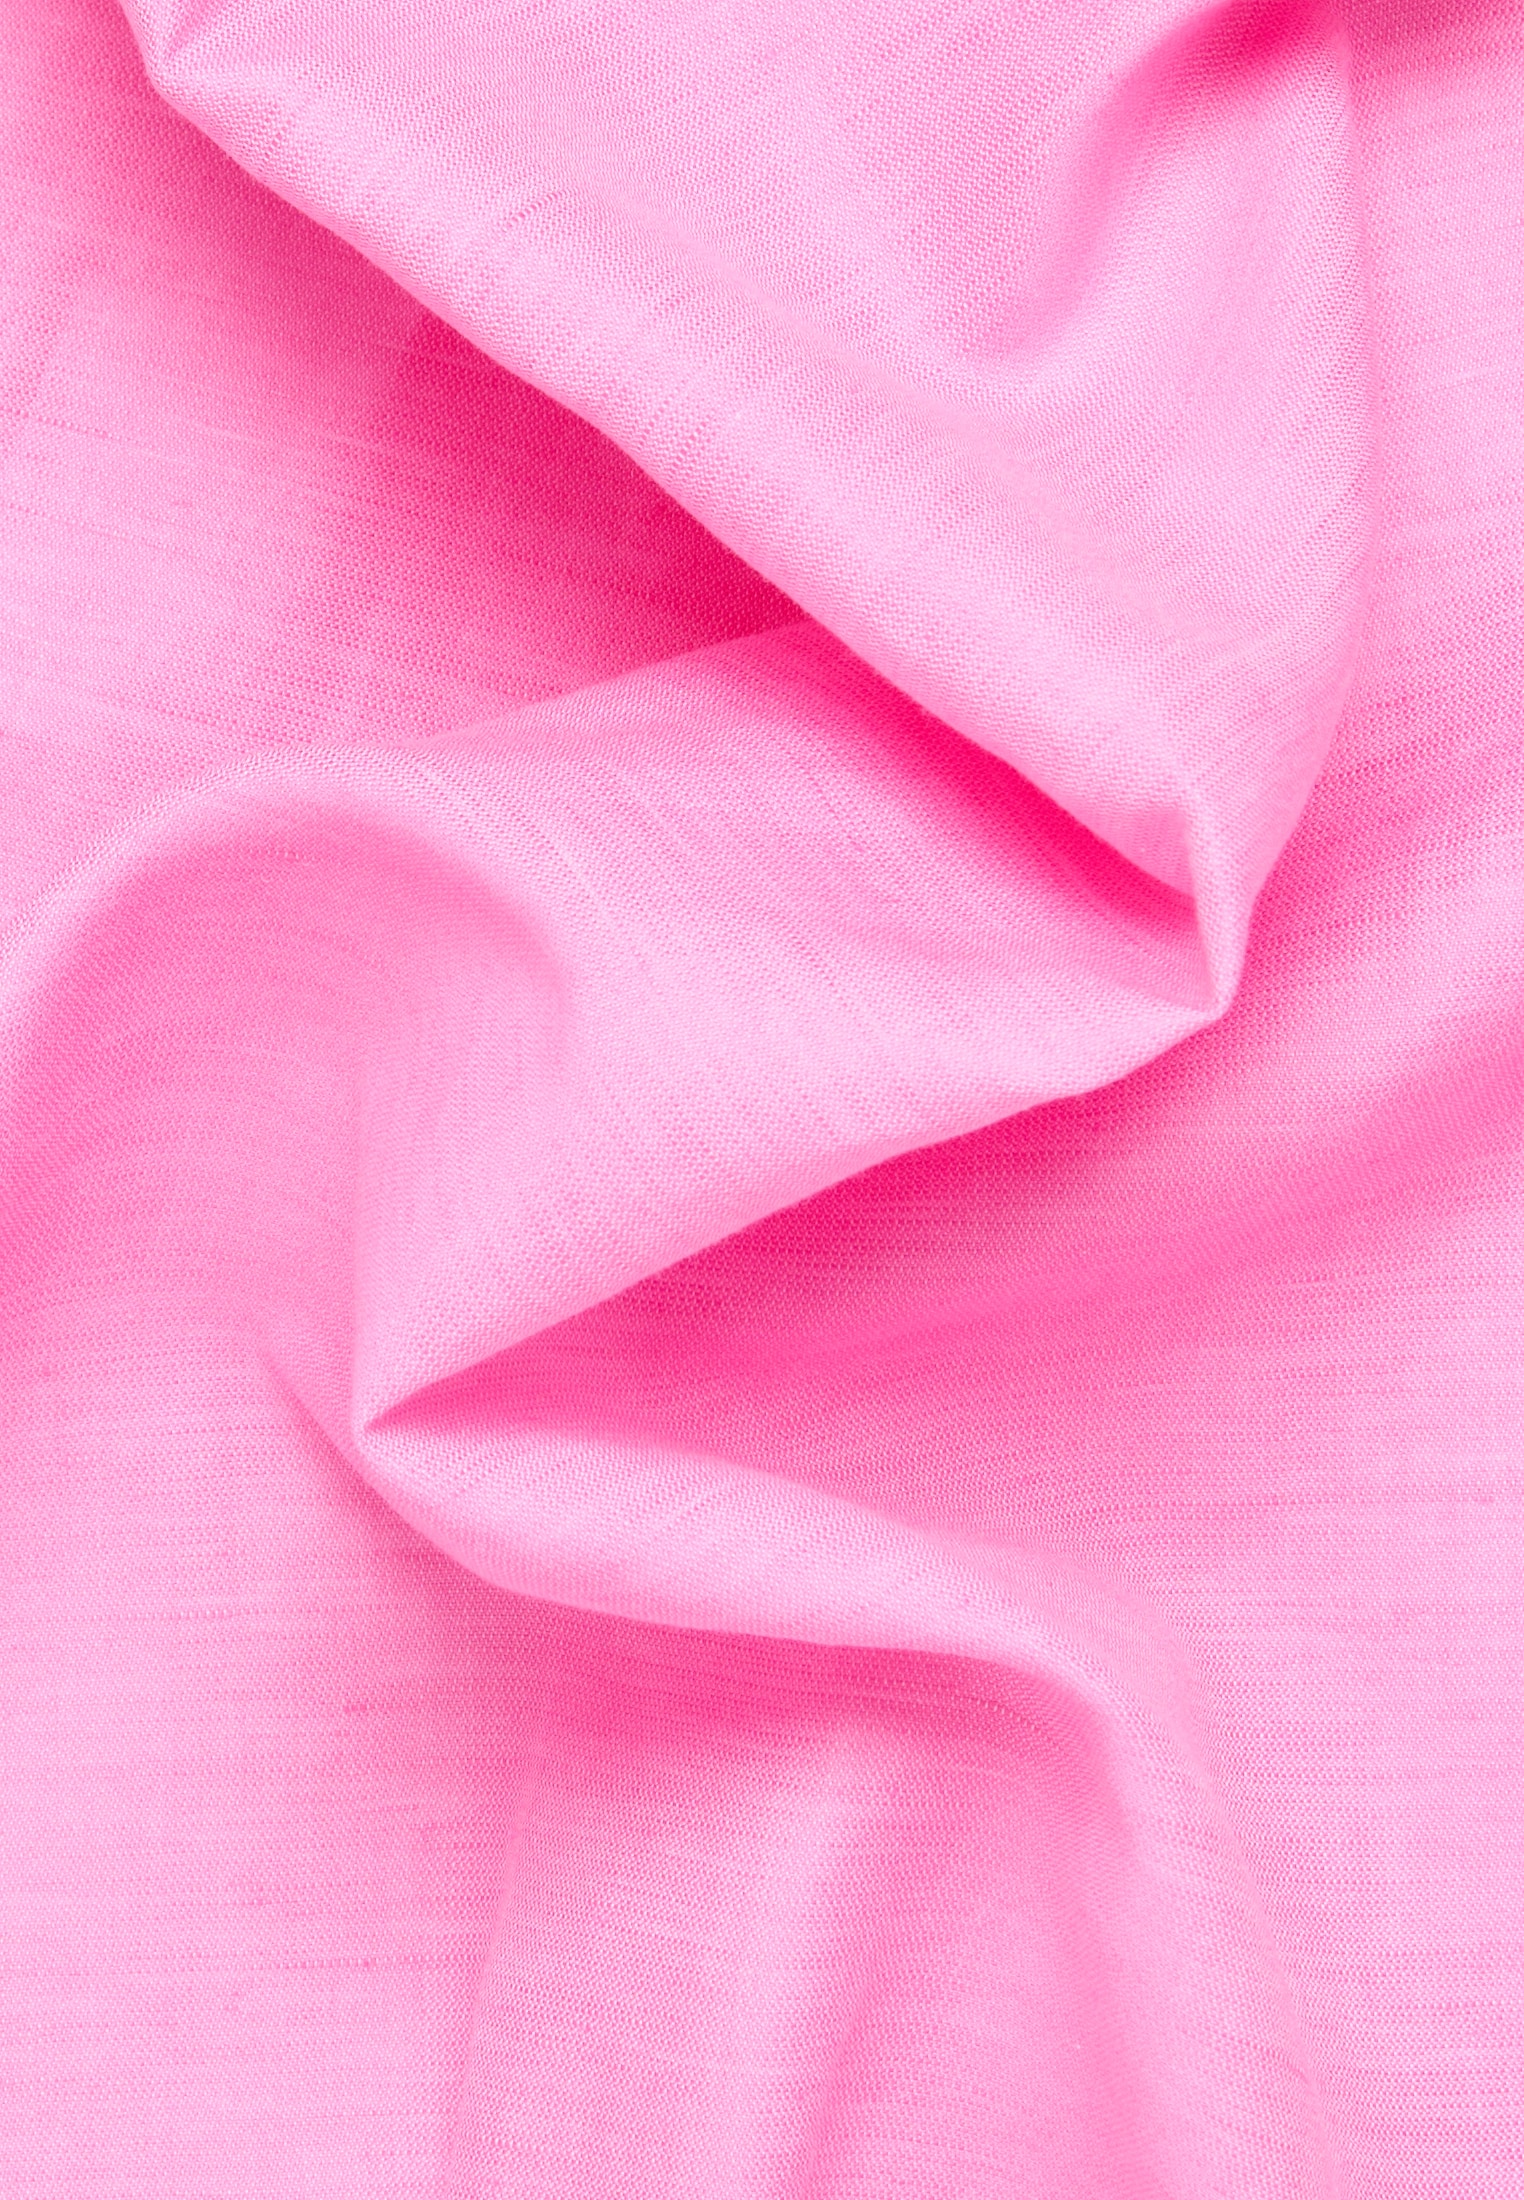 Linen Shirt Blouse in rose plain